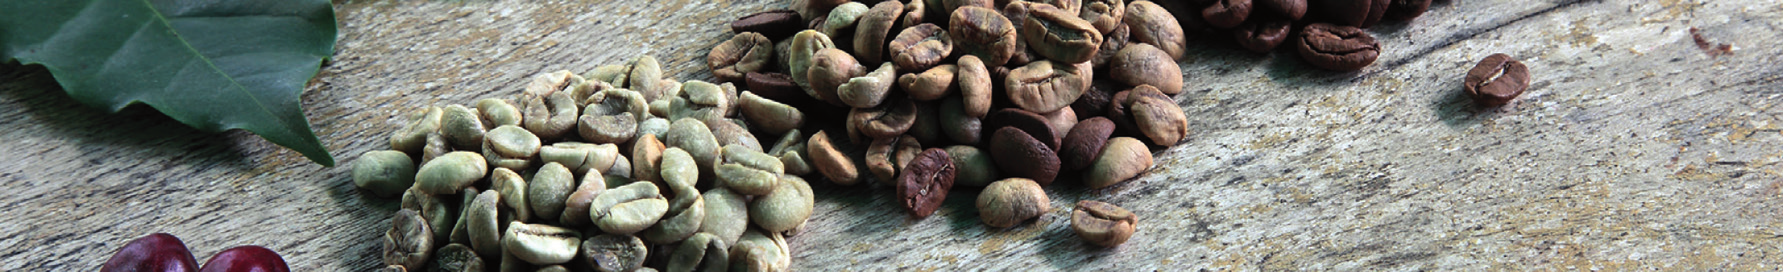 Unsere Kaffeesorten 100% Arabica Brazil Aus der Cerrado Region, den Savannen Zentral-Brasiliens, stammt dieser echte Arabica. Feine Zitrus- und Karamellnote.